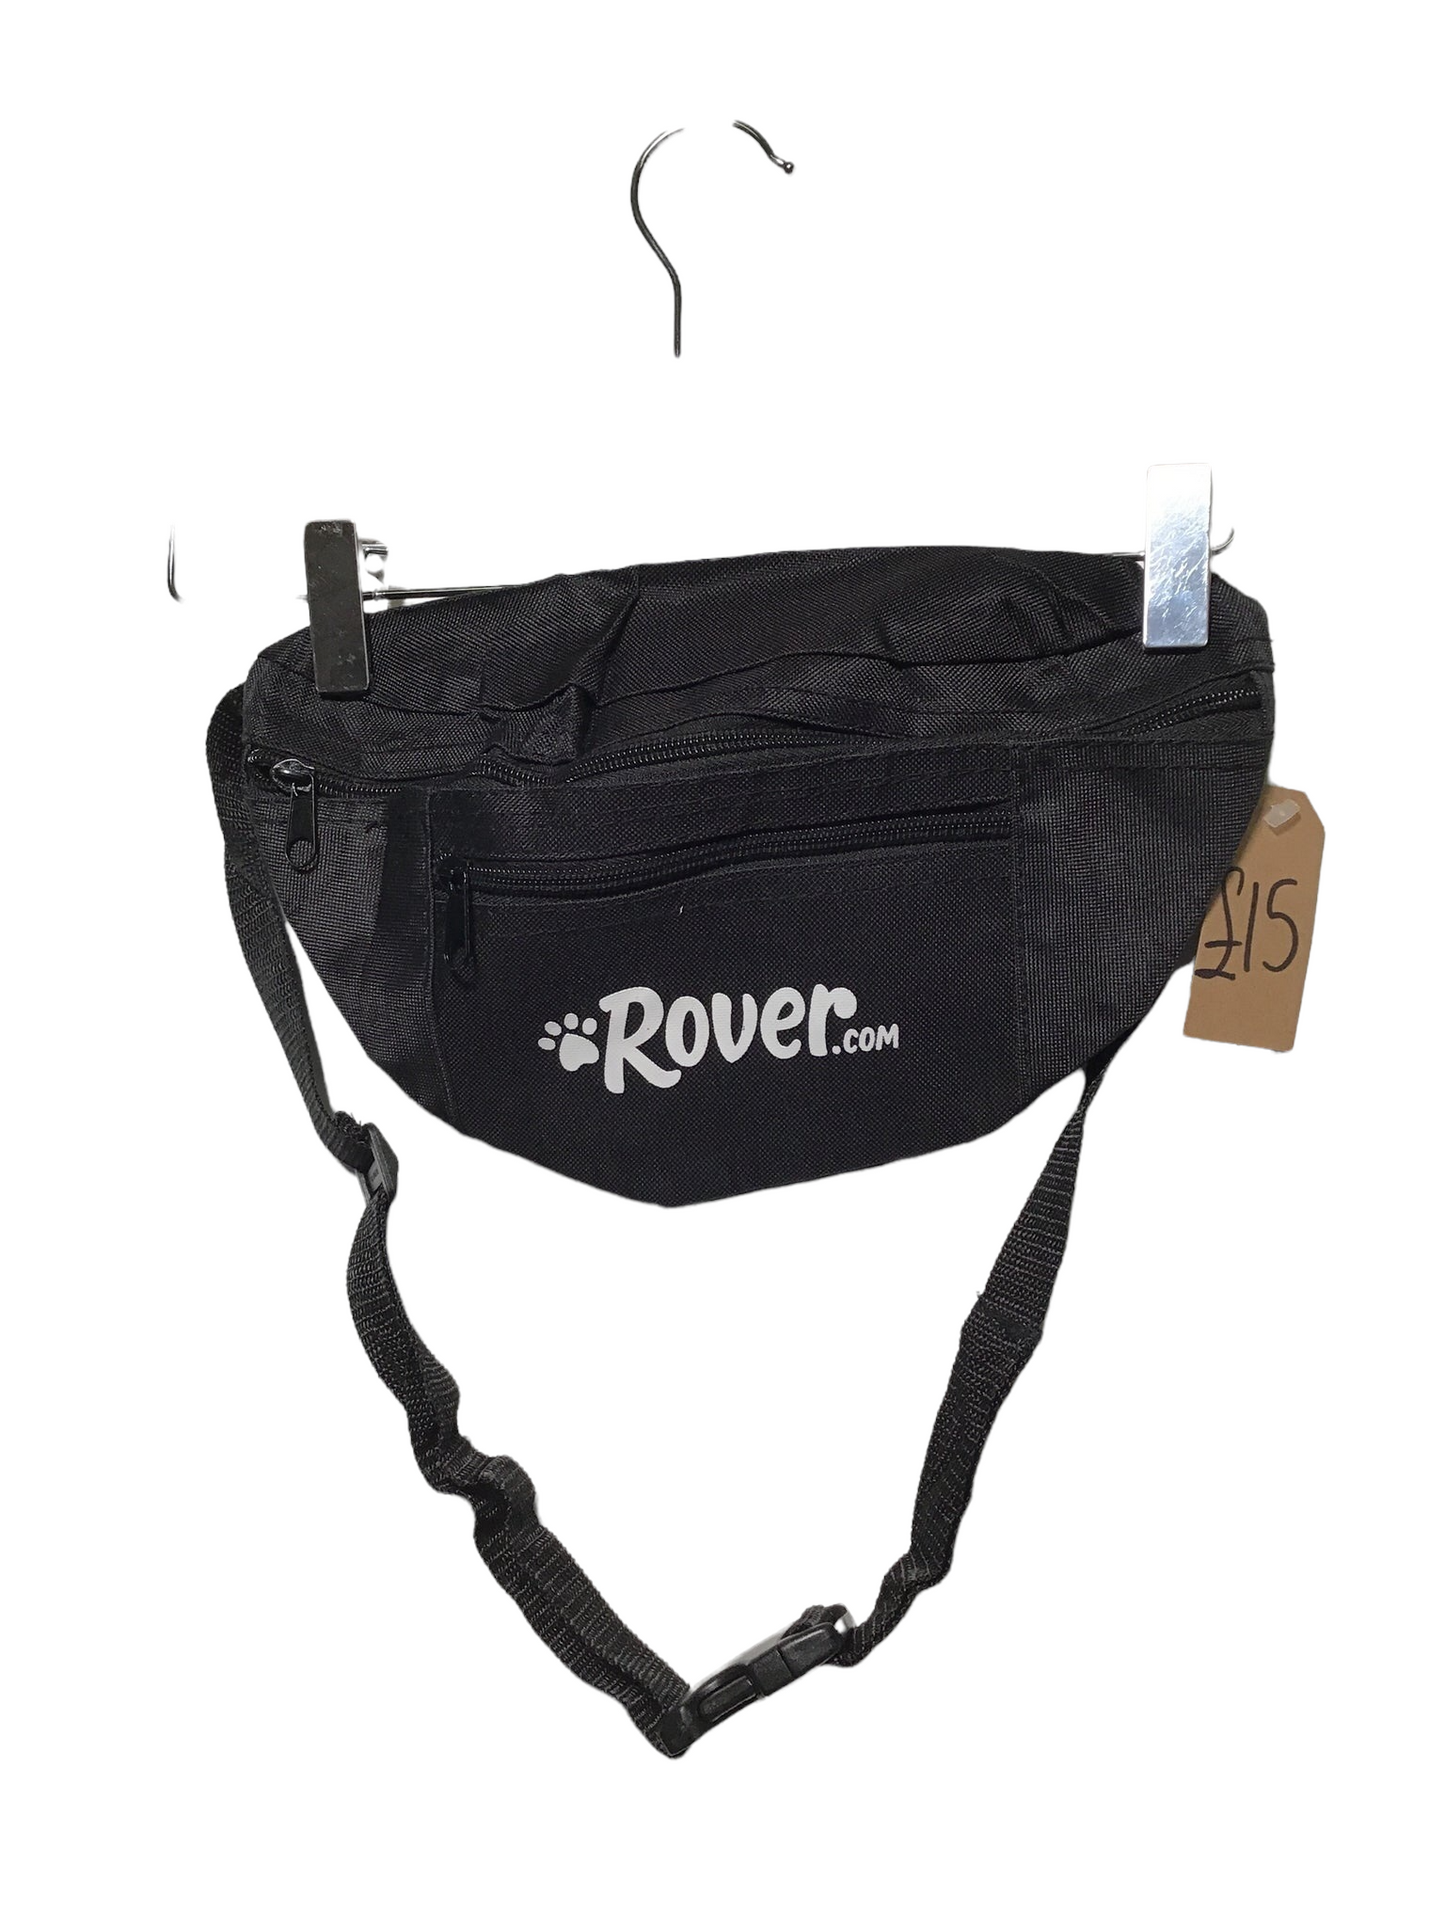 Rover.com Bum Bag